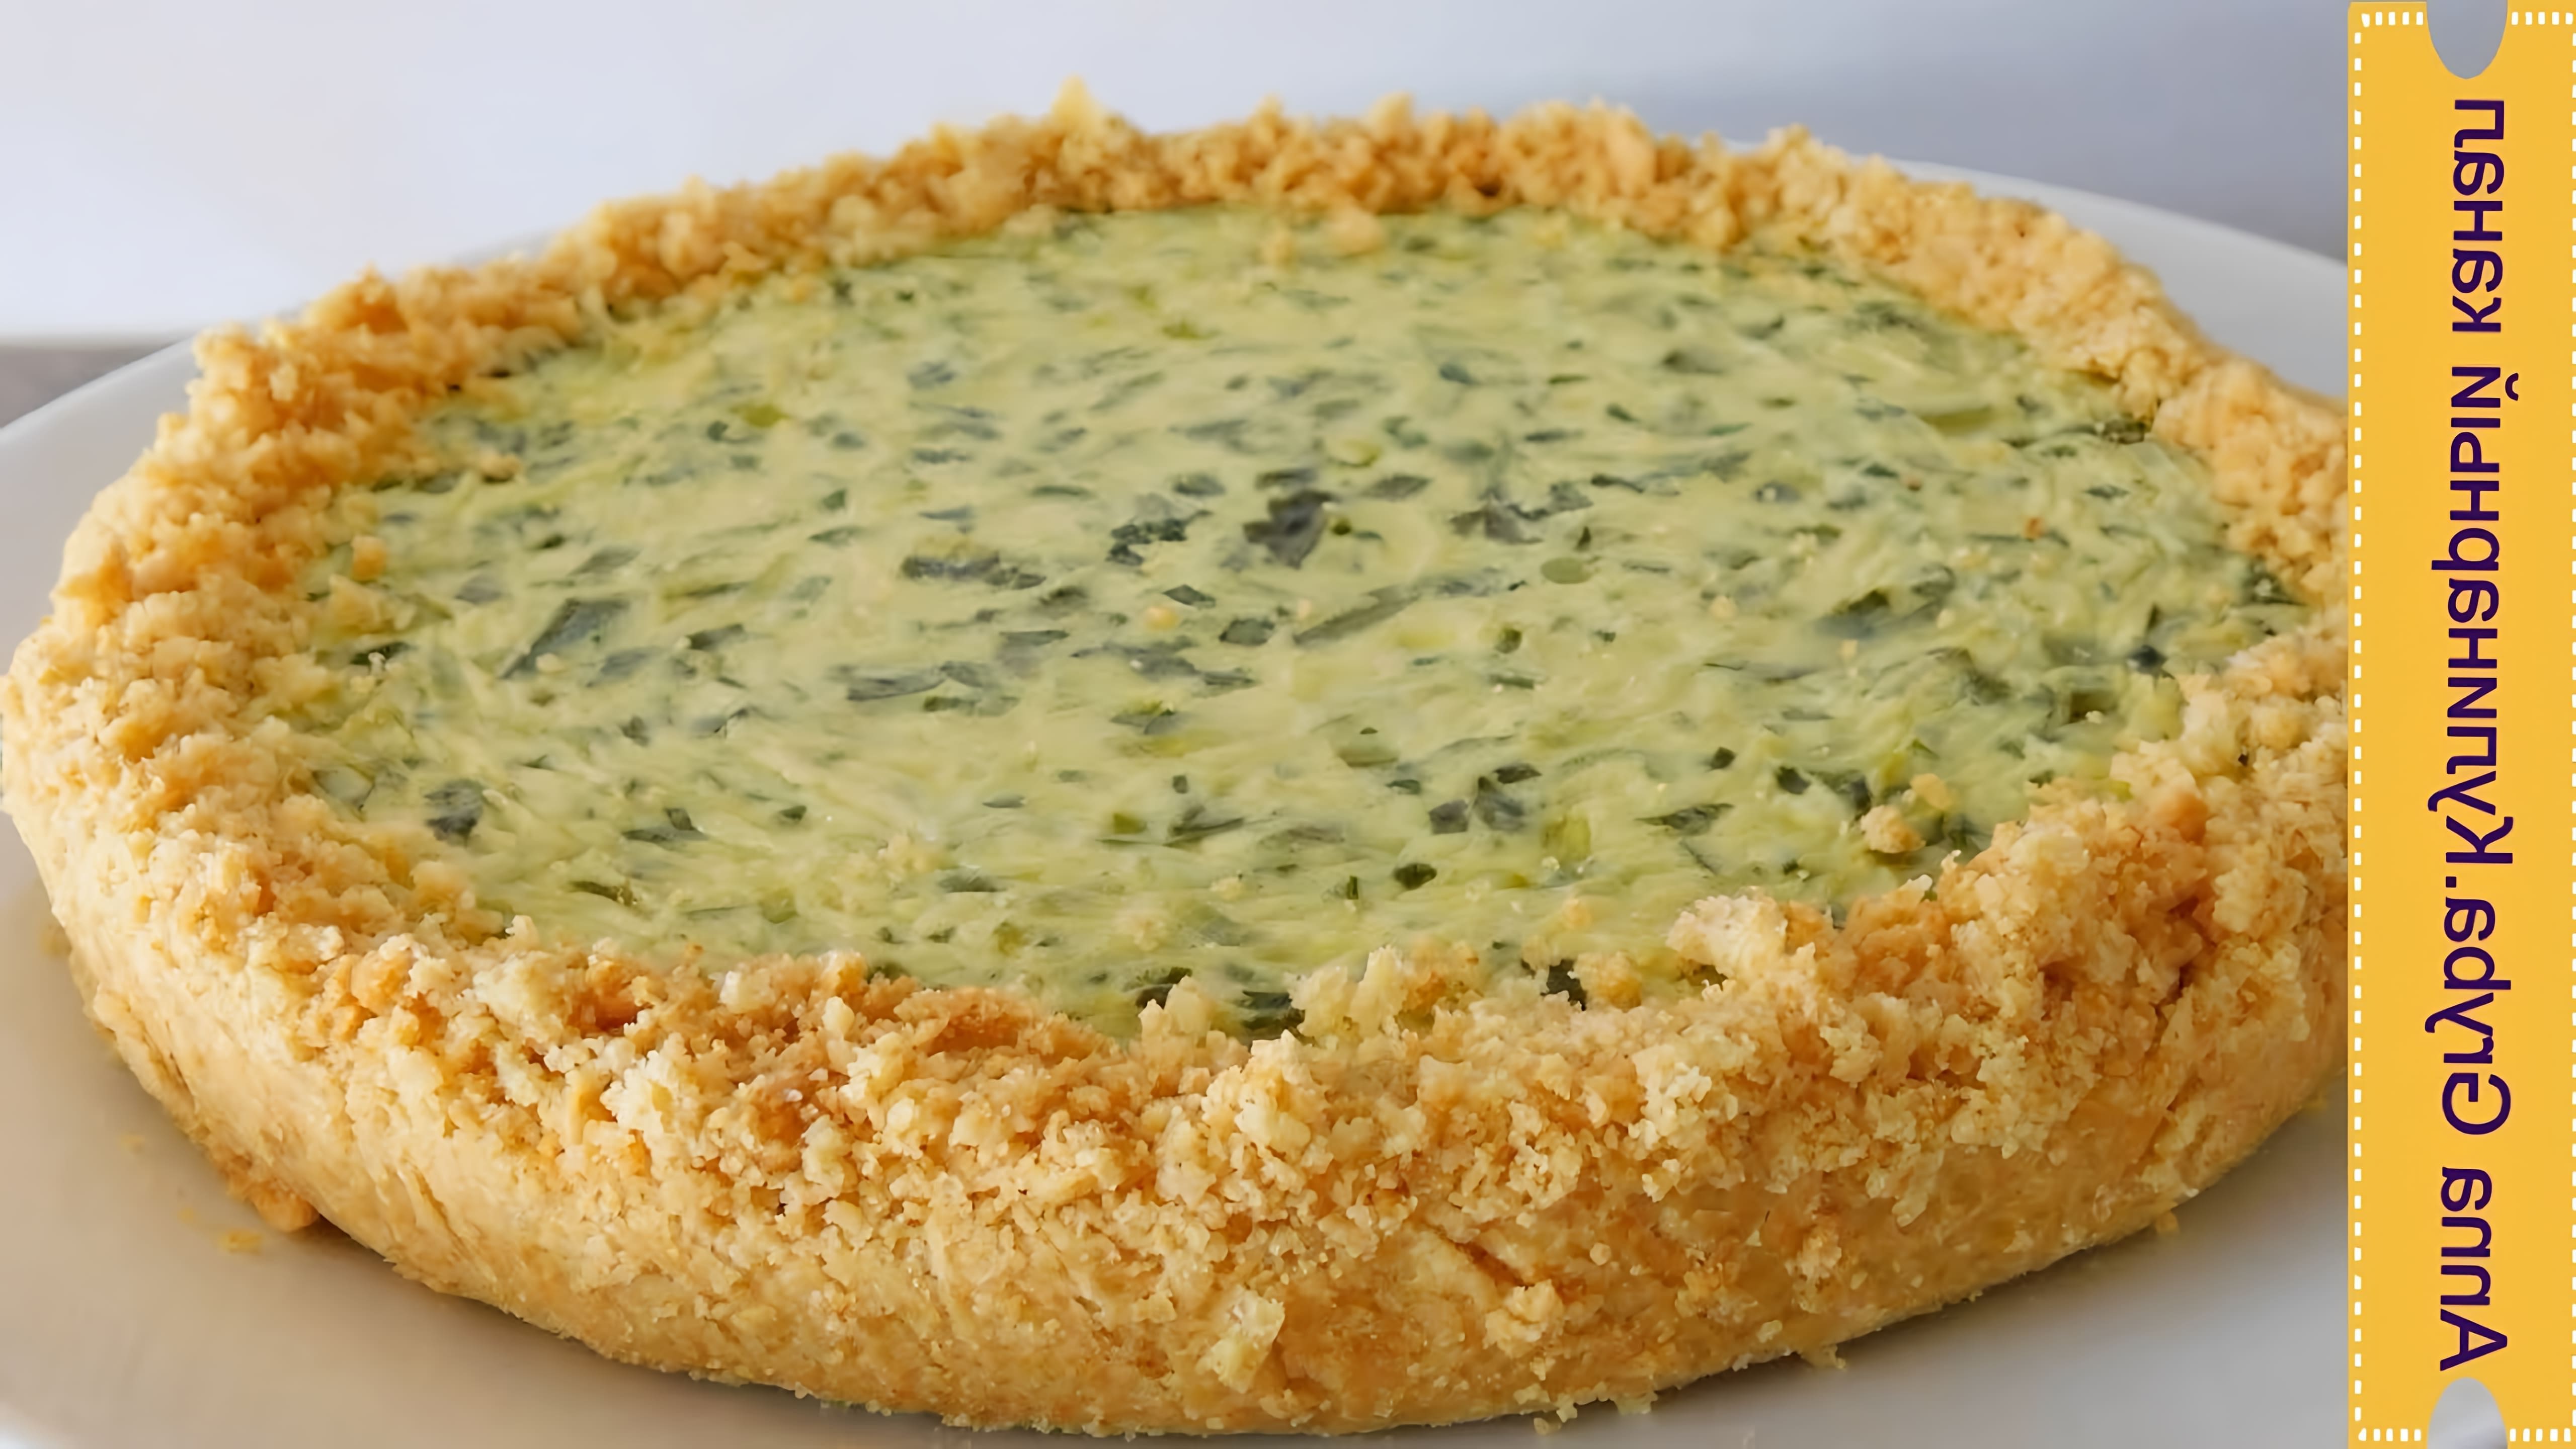 В этом видео демонстрируется процесс приготовления быстрого пирога с зеленым луком